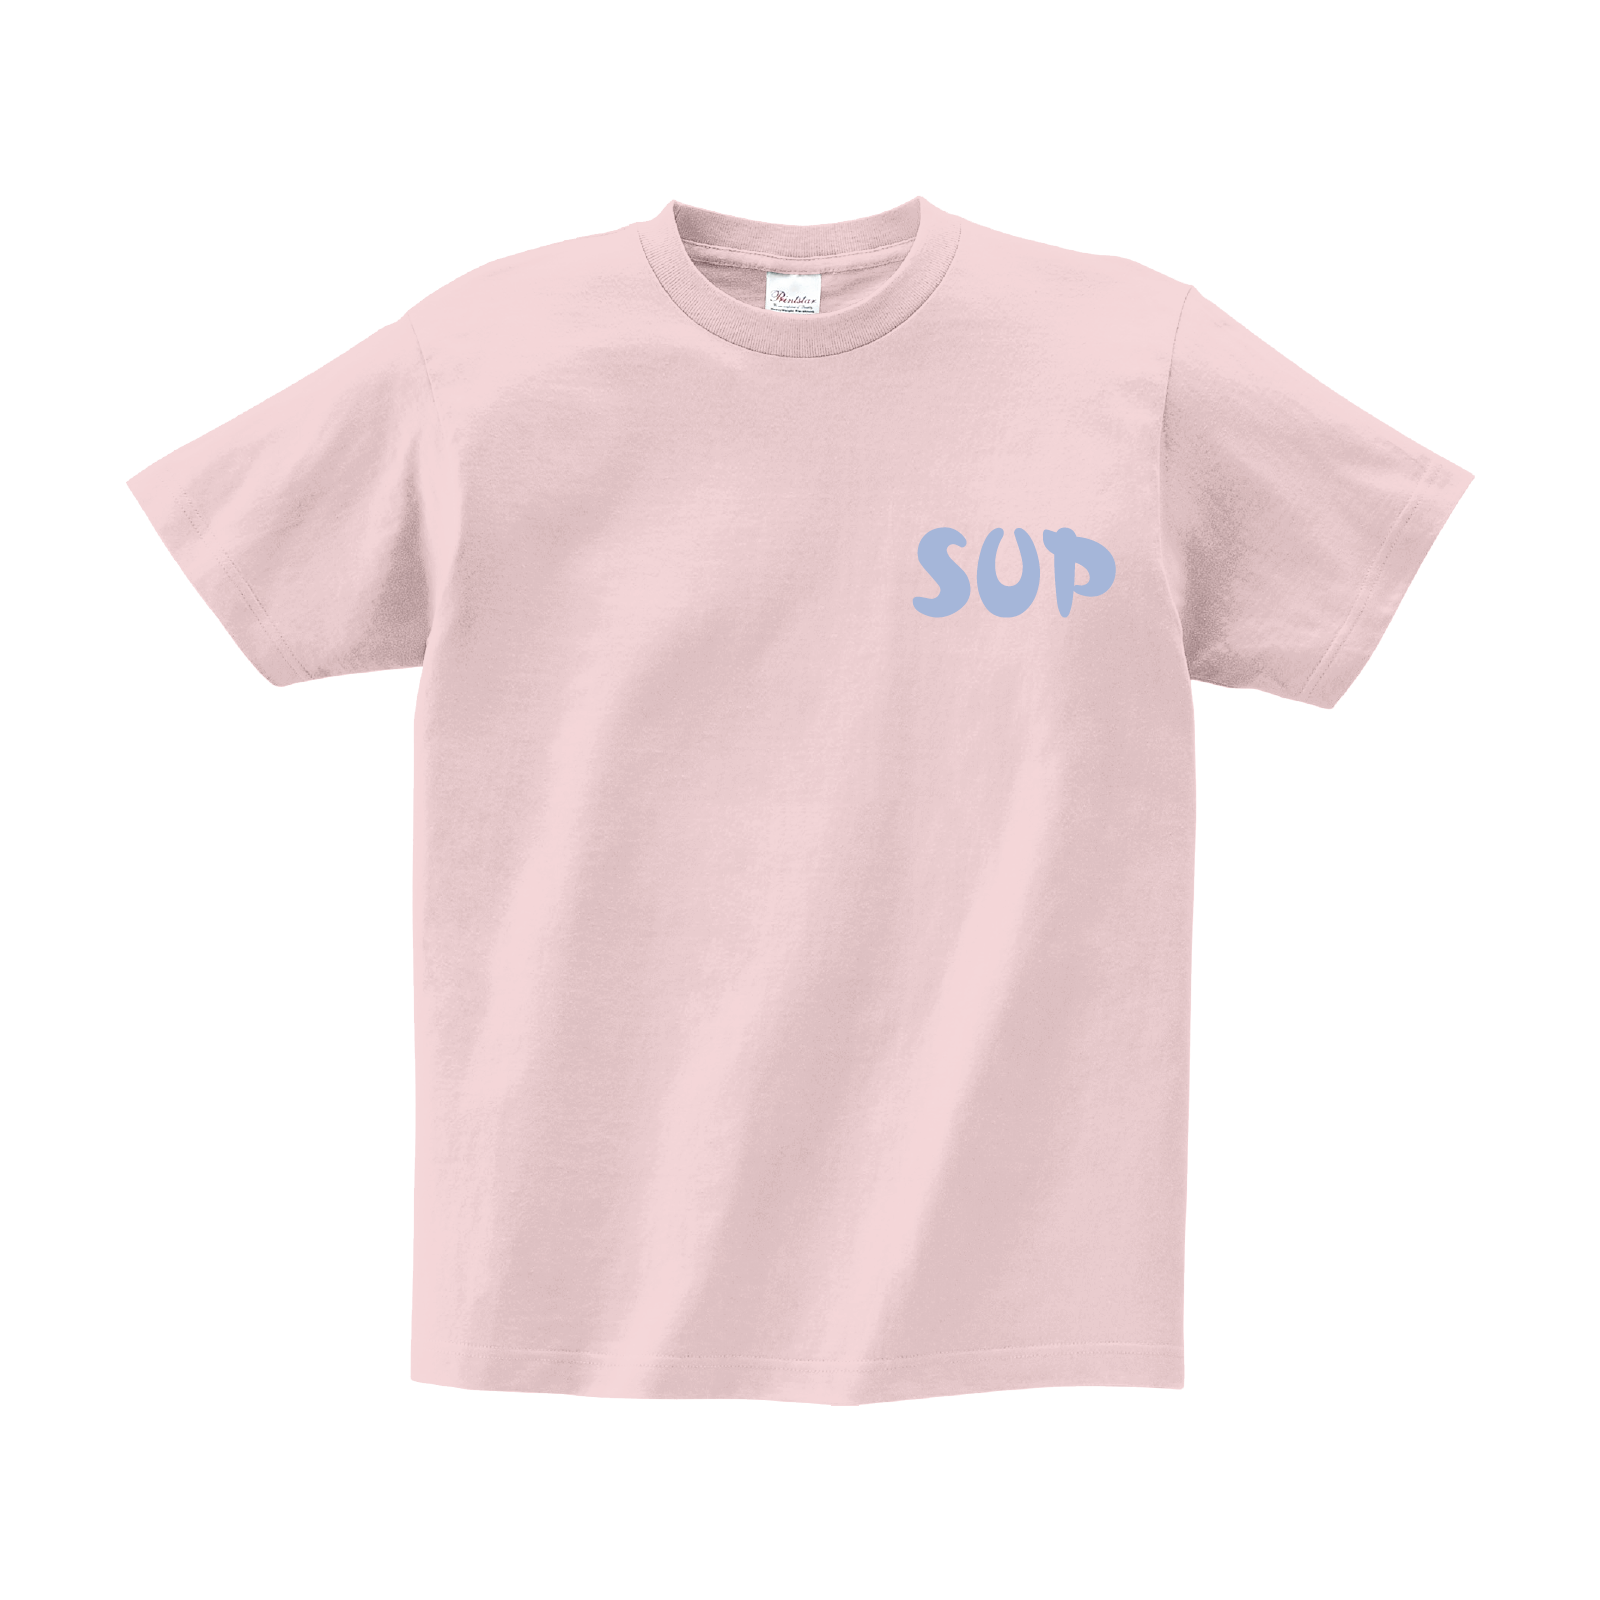     7-04Lt.Pink_Tshirt